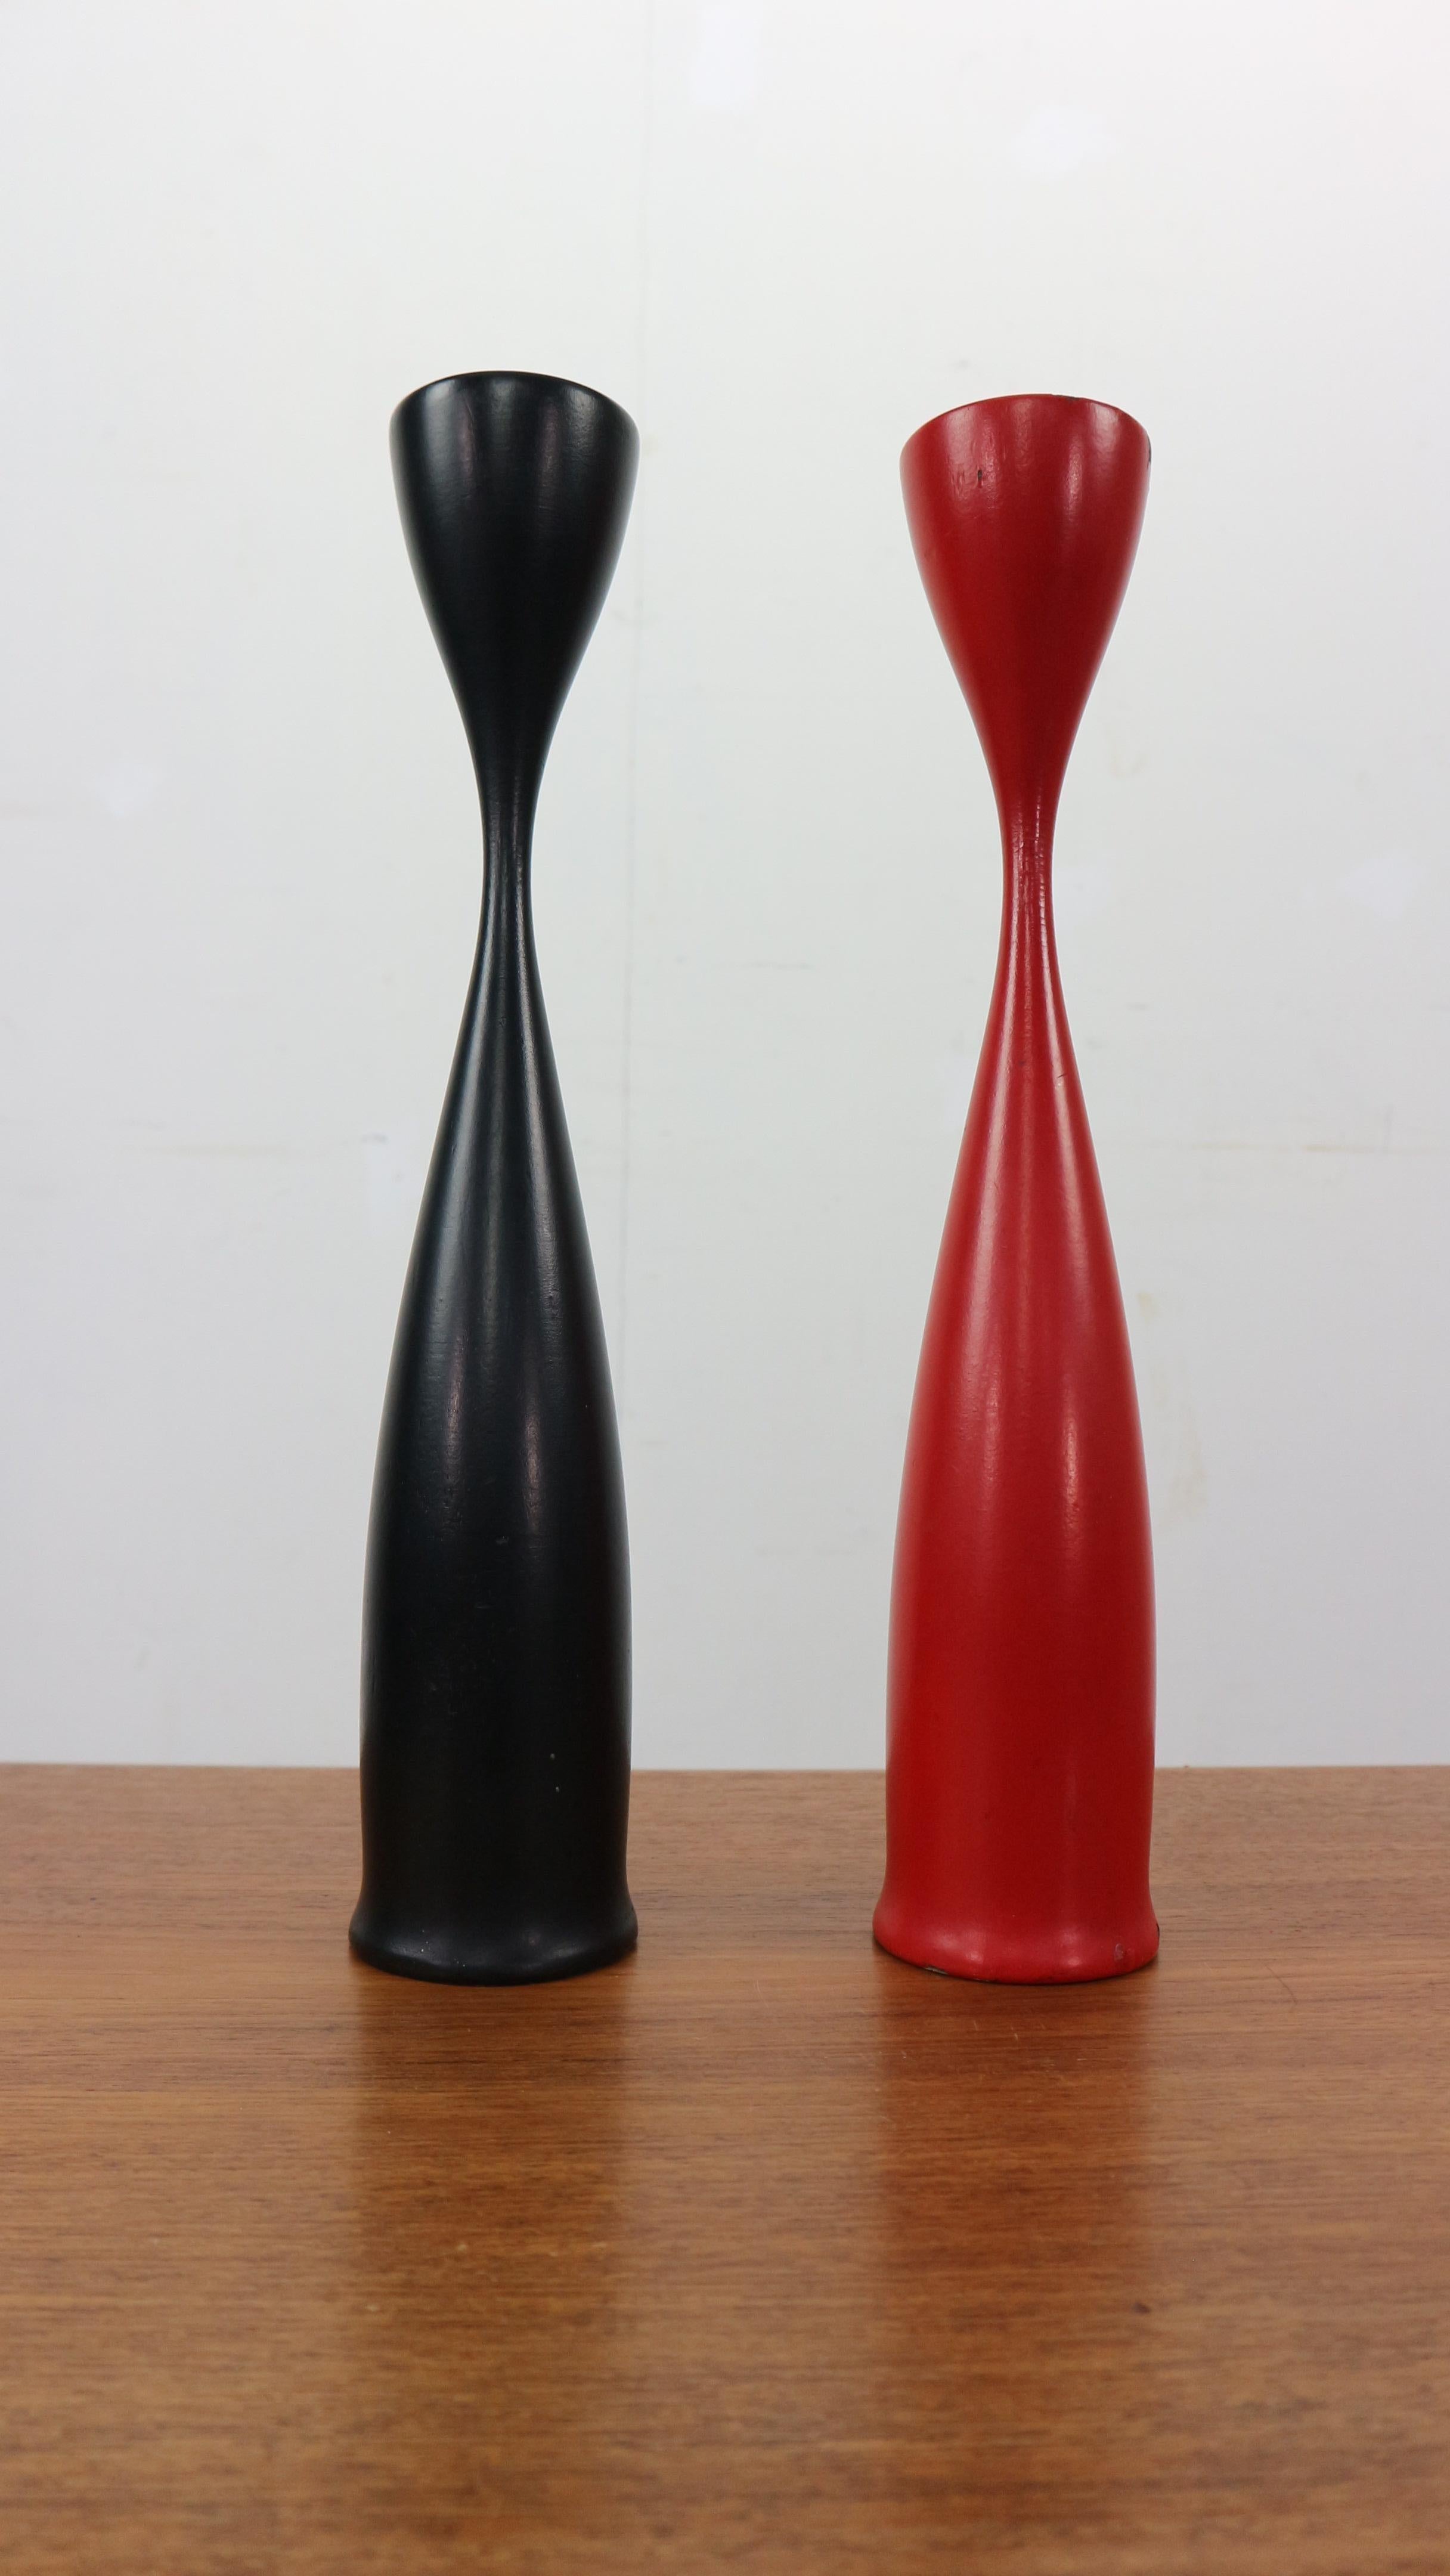 Satz von zwei modernen skandinavischen Kerzenhaltern aus Schweden, 1960er Jahre.
Organisch geformtes und sehr dekoratives Designobjekt.

